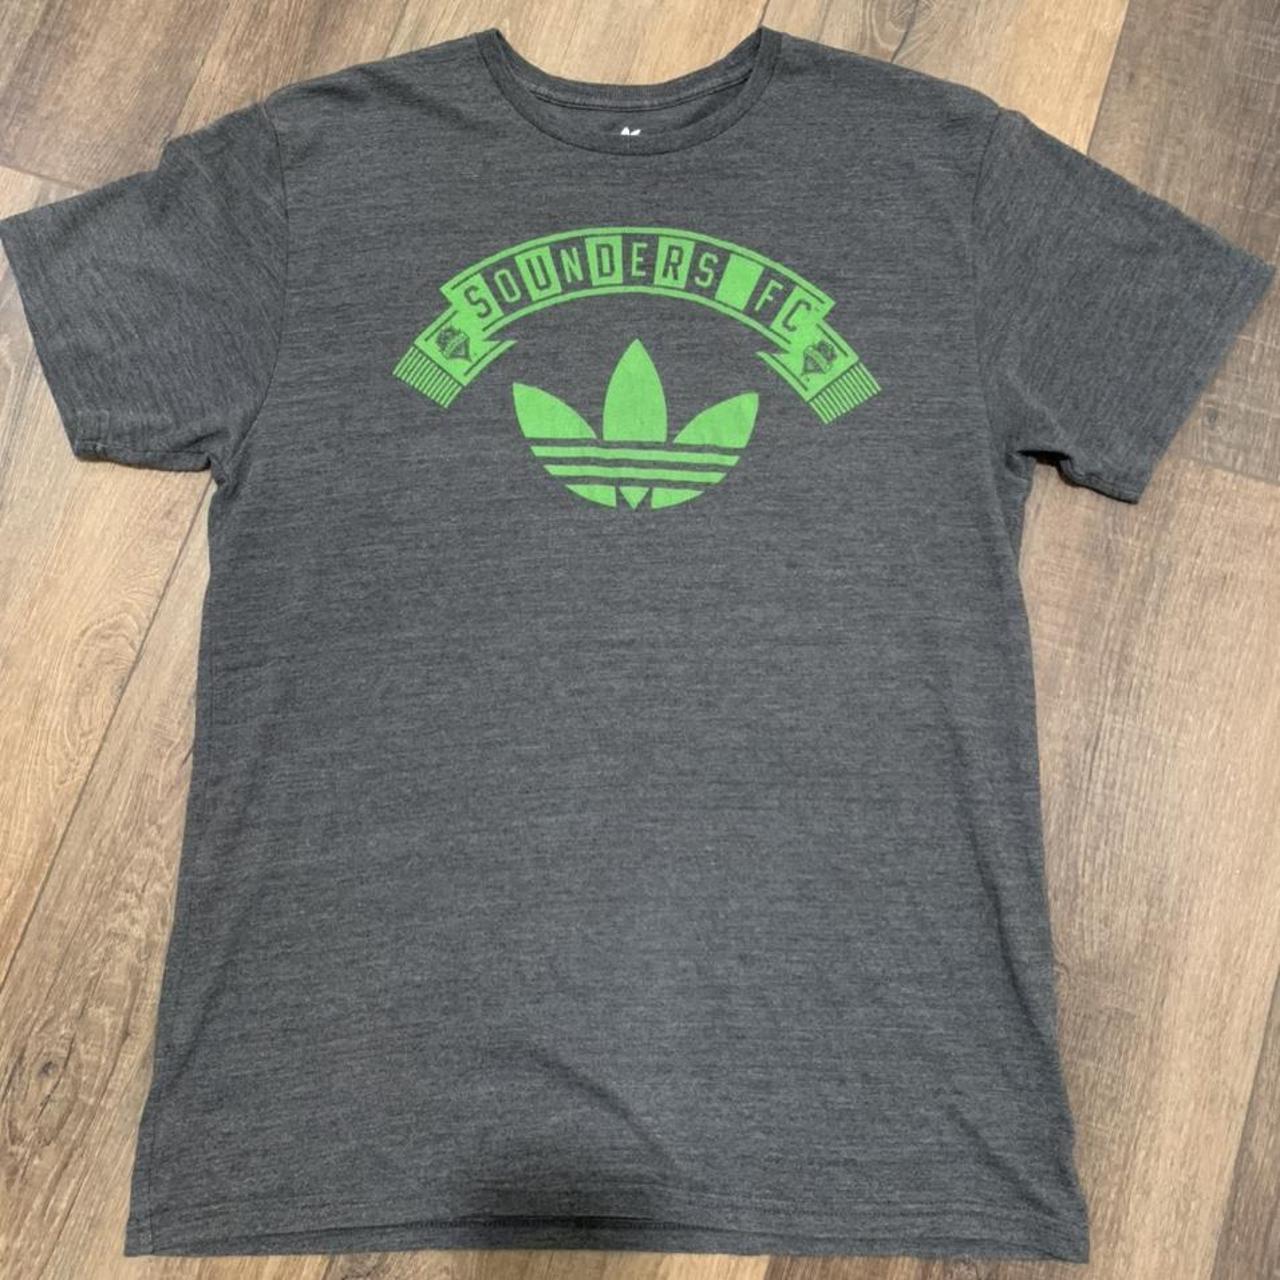 Adidas Men's T-Shirt - Green - M